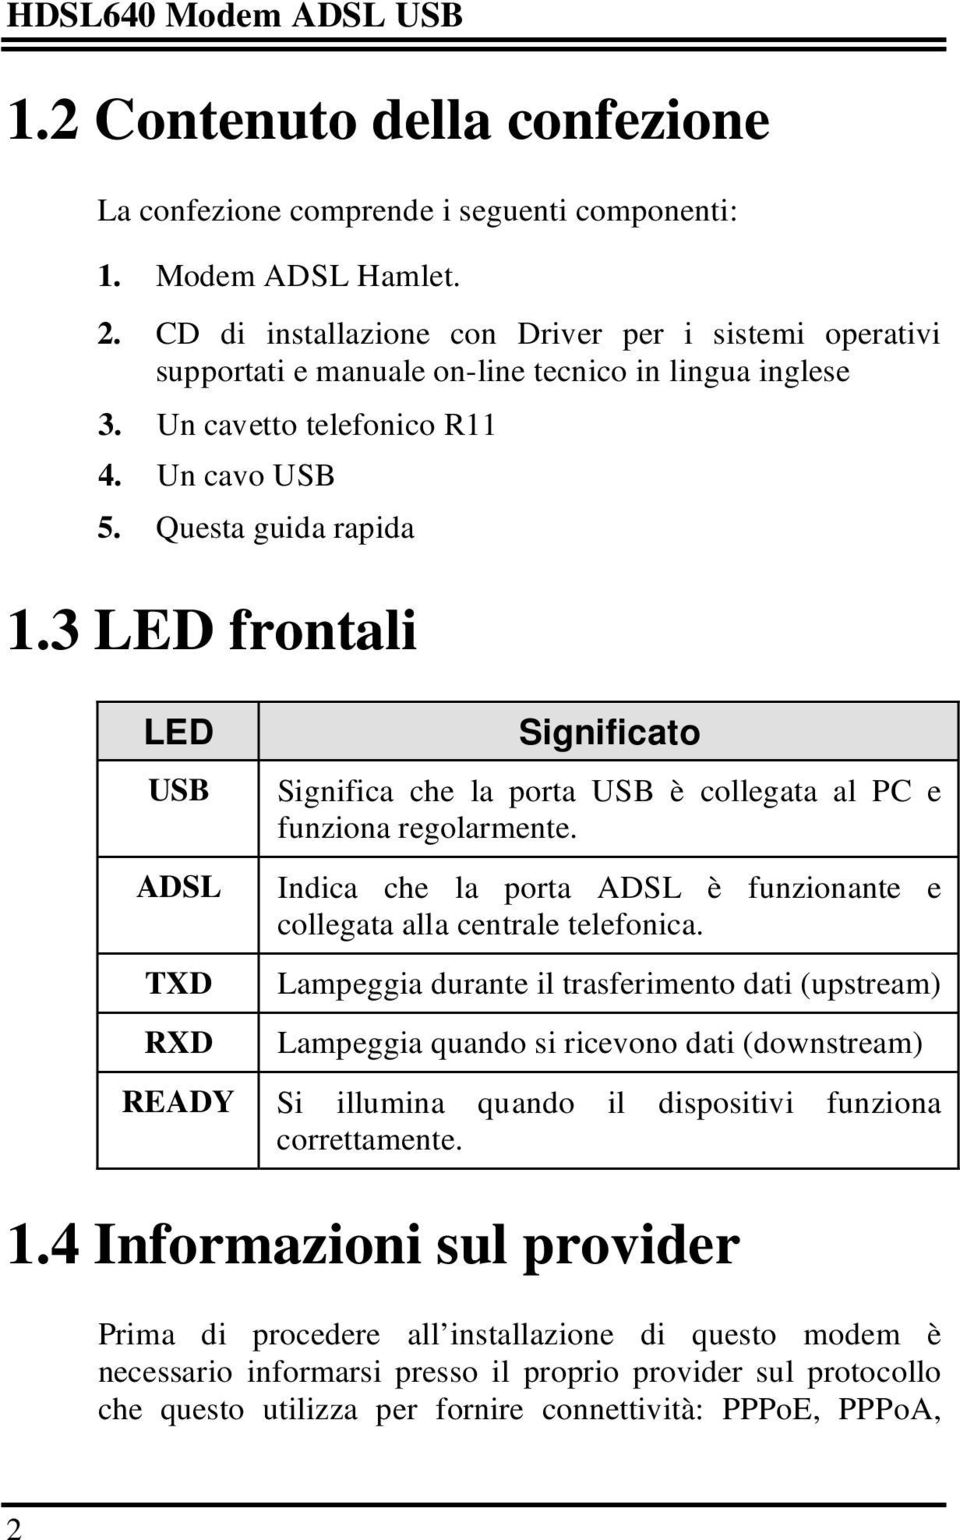 3 LED frontali LED USB ADSL TXD RXD Significato Significa che la porta USB è collegata al PC e funziona regolarmente. Indica che la porta ADSL è funzionante e collegata alla centrale telefonica.